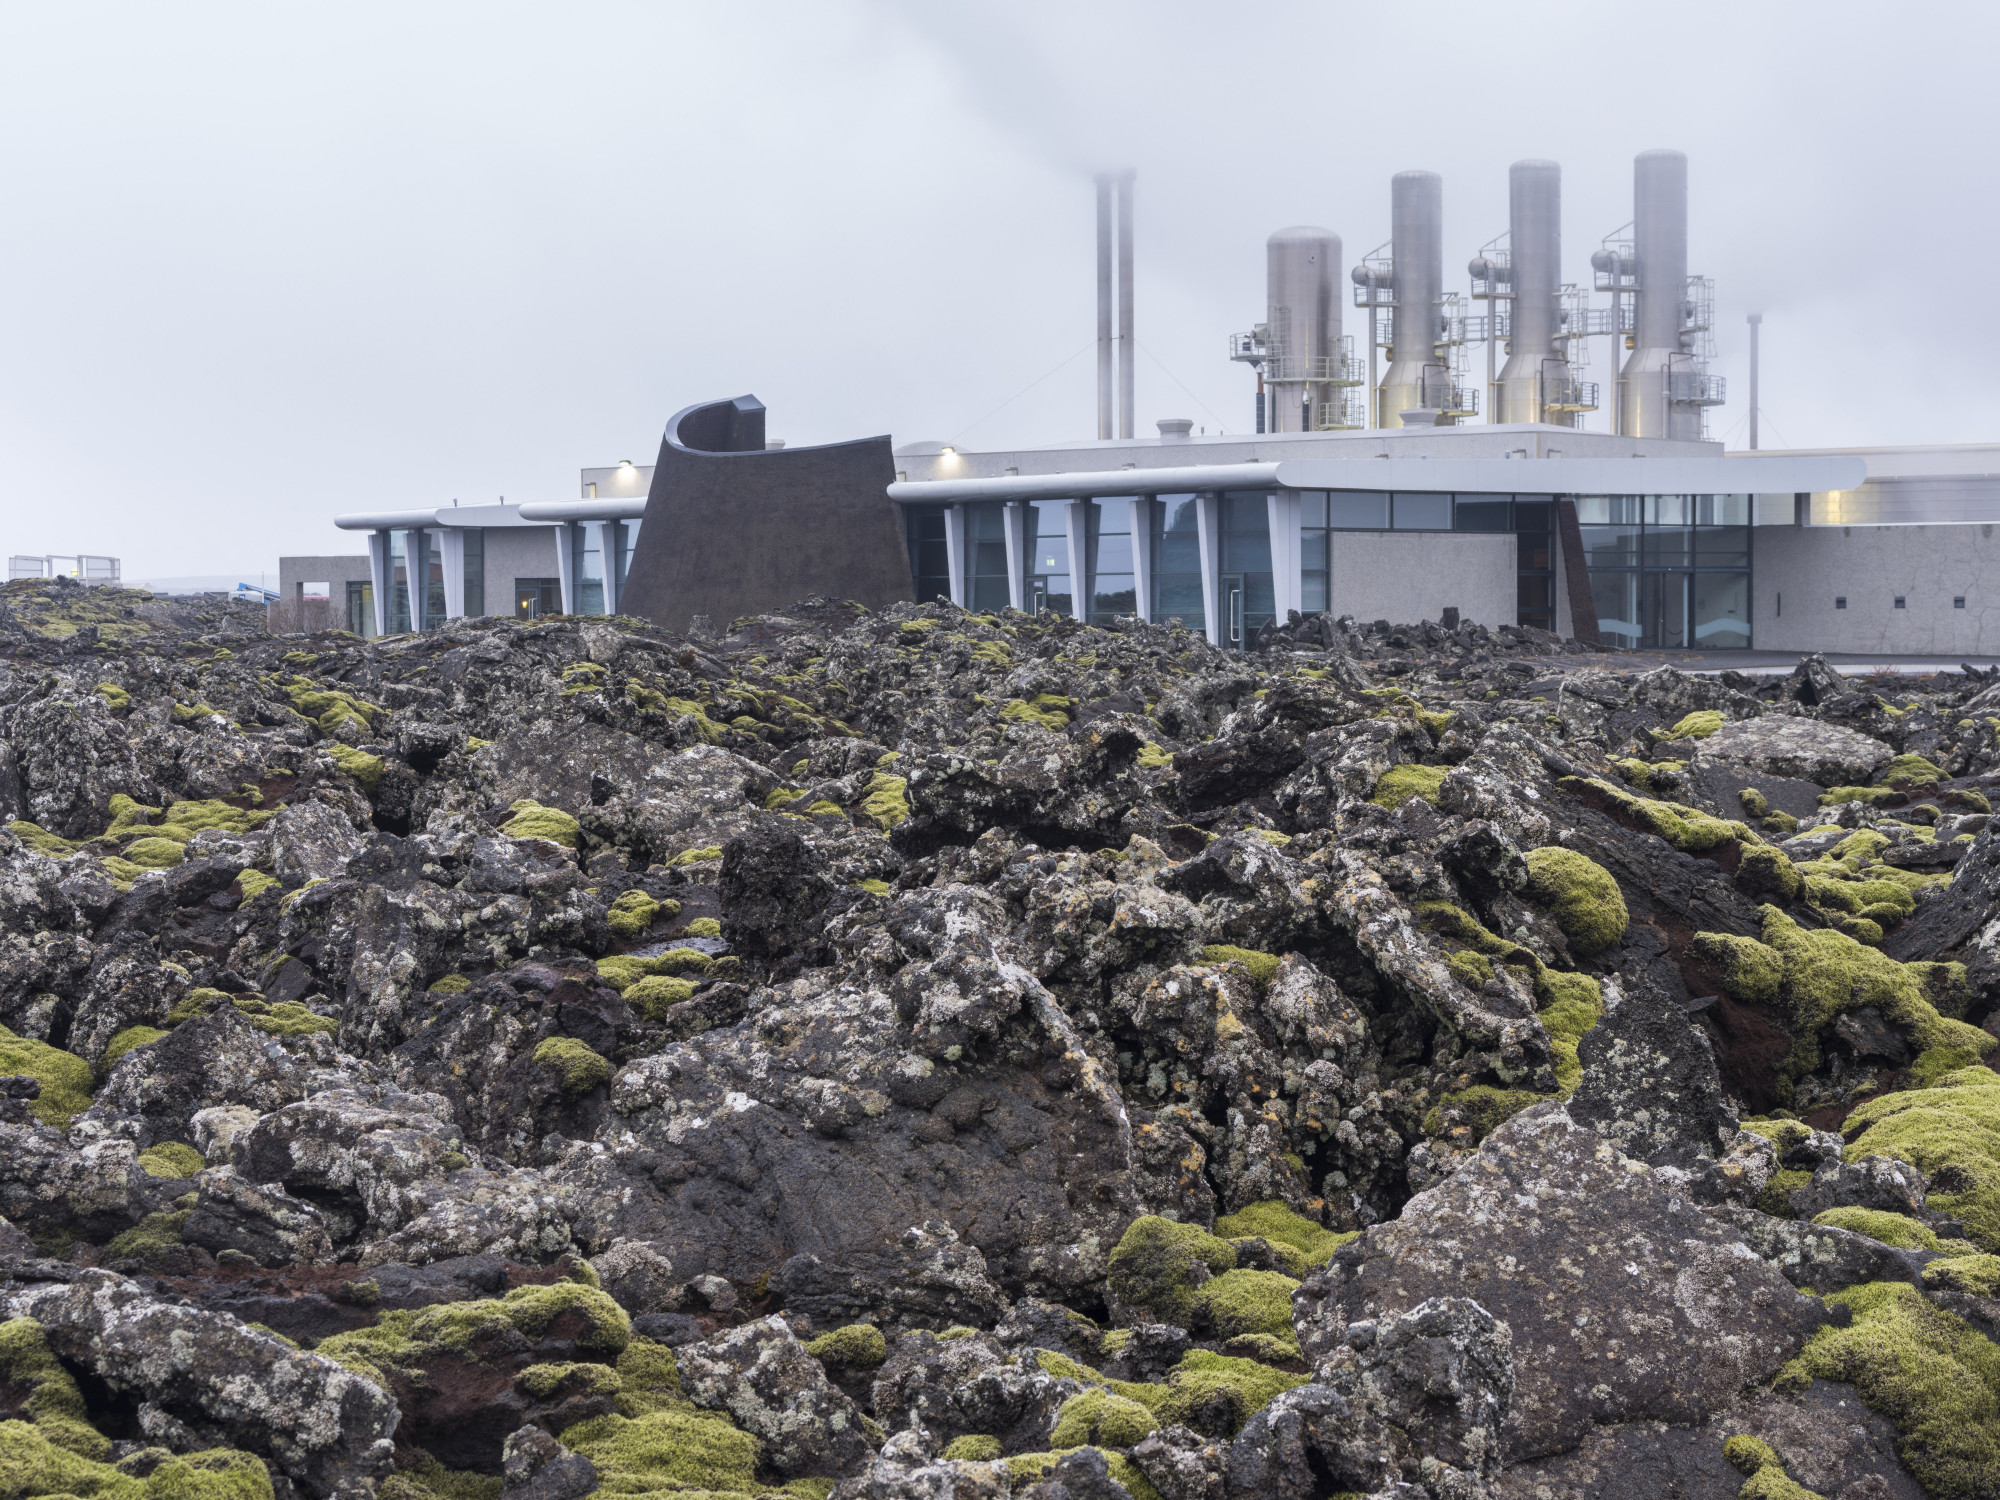 Védőfalat húznak fel egy geotermikus erőmű köré a lávaveszély miatt Izlandon